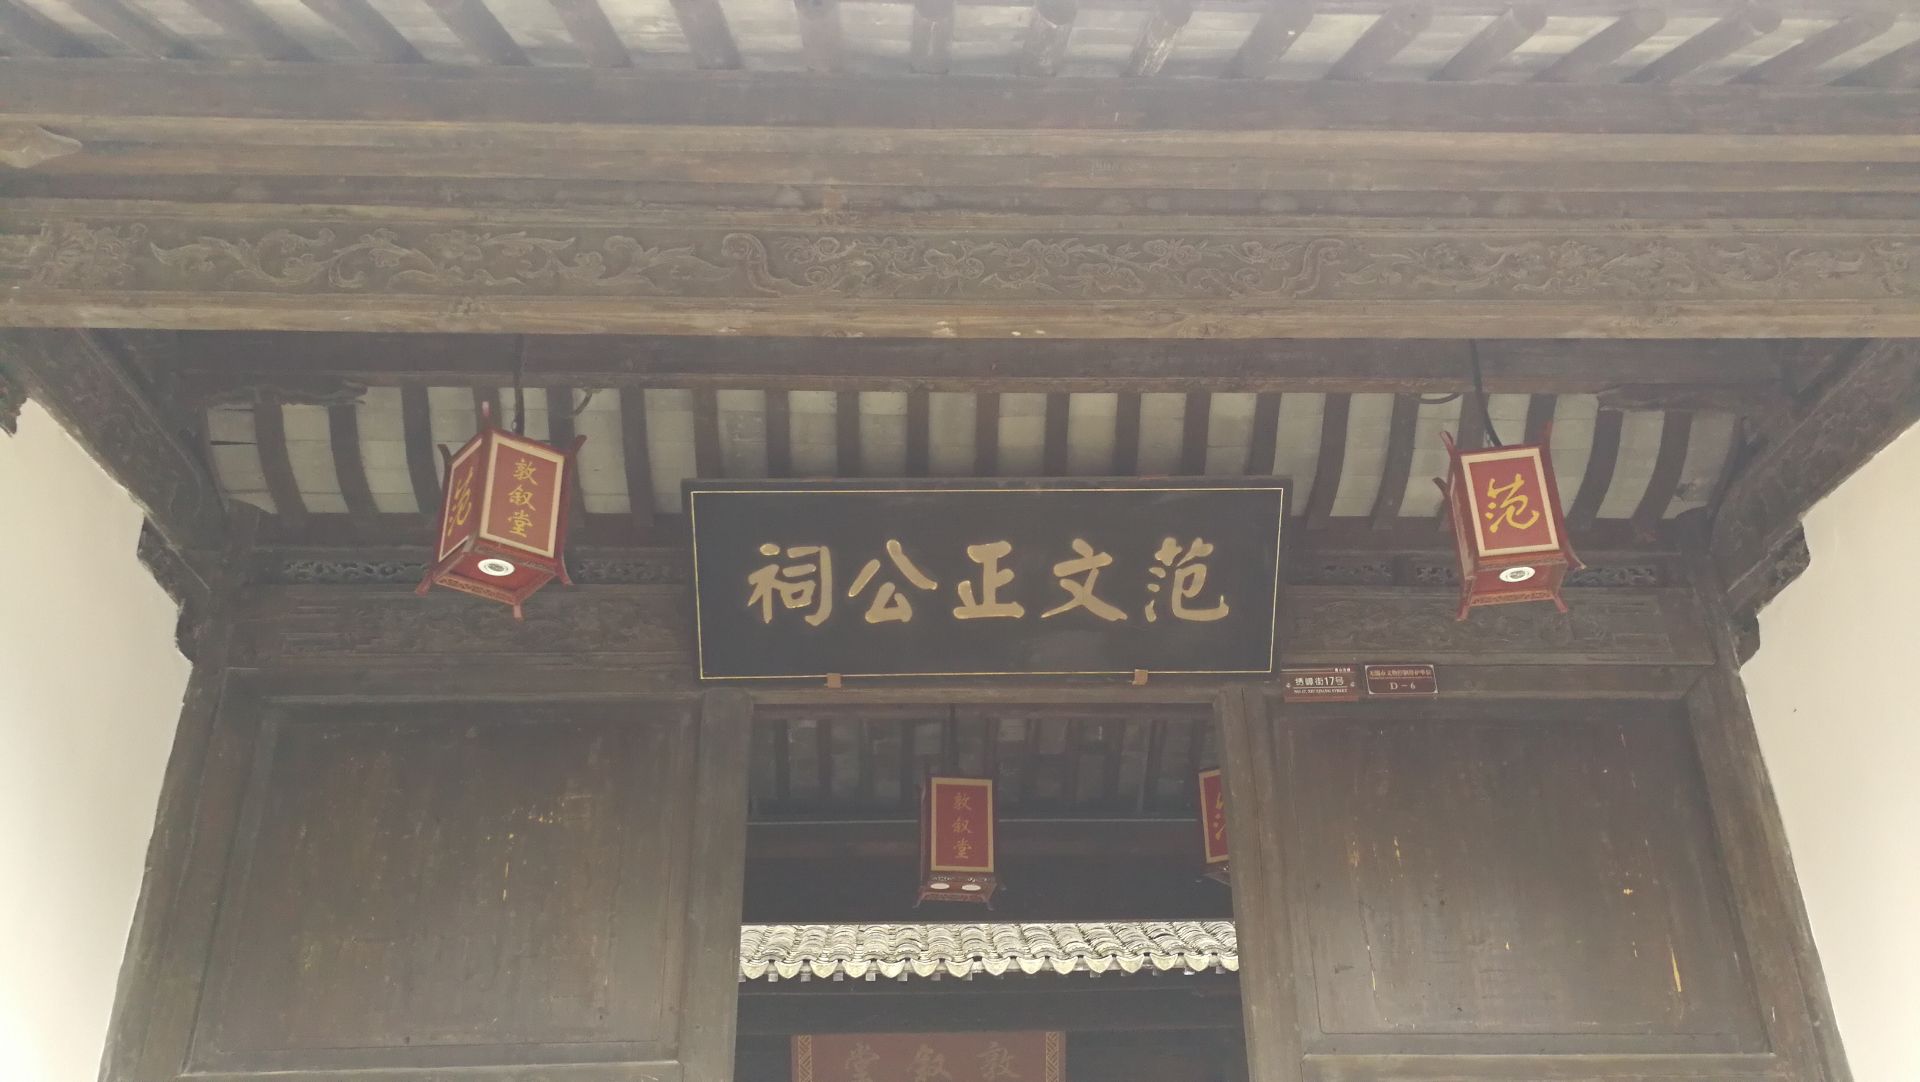 范文正公祠位于惠山古镇横街之上,从门额上的题字也可看出这是为纪念